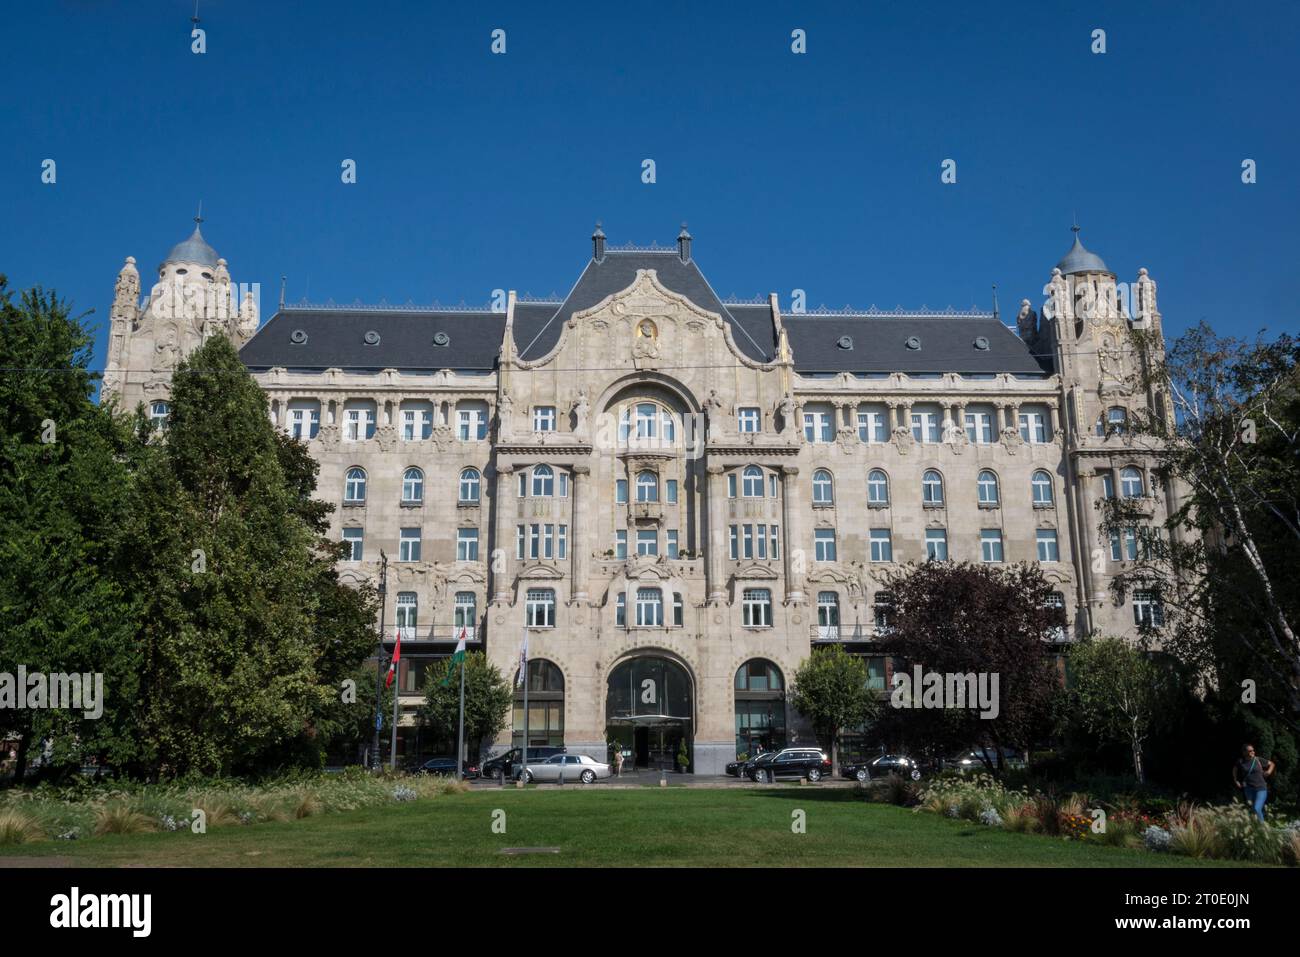 Four Seasons Hotel Gresham Palace, Széchenyi István Square, Budapest, Hungary Stock Photo